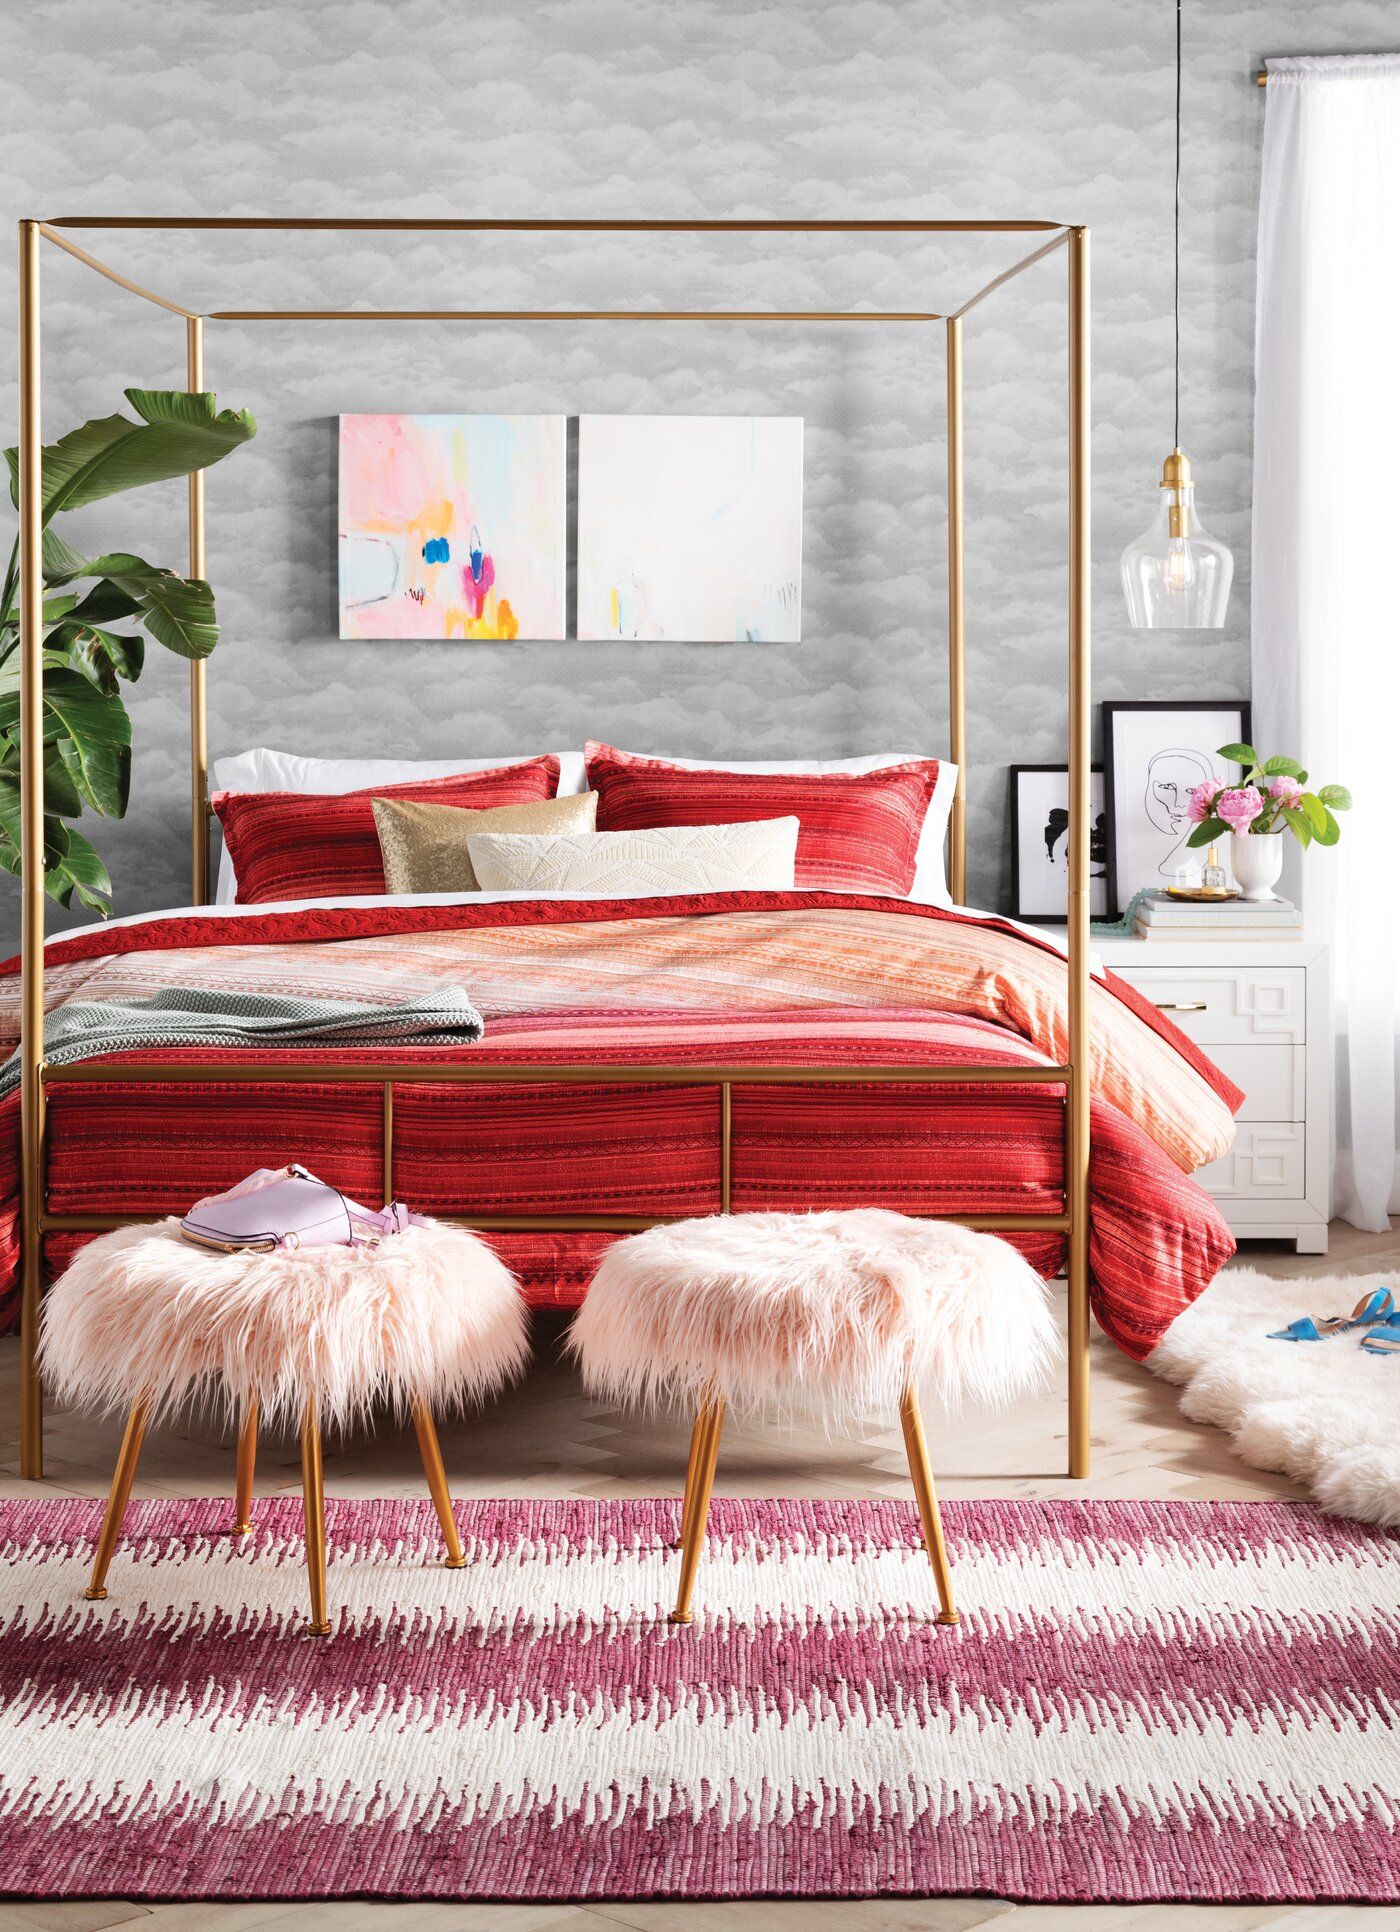 Phòng ngủ rực rỡ cho ngày Đông thêm ấm áp với màu sắc hồng, đỏ kết hợp thảm trải sàn, bộ ghế cuối chân giường bọc lông thú hồng pastel duyên dáng.